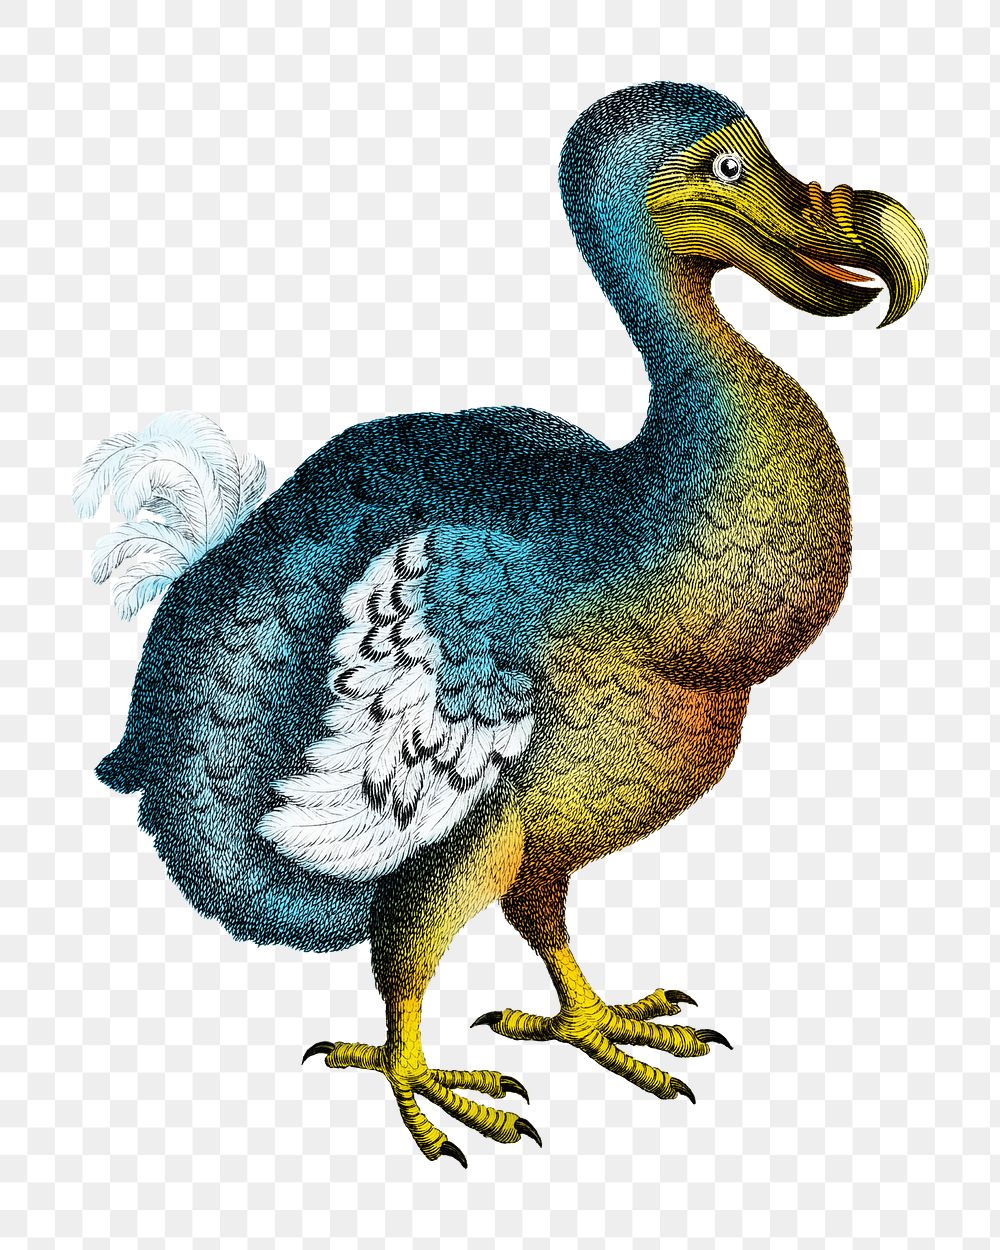 Dodo png vintage animal illustration on transparent background